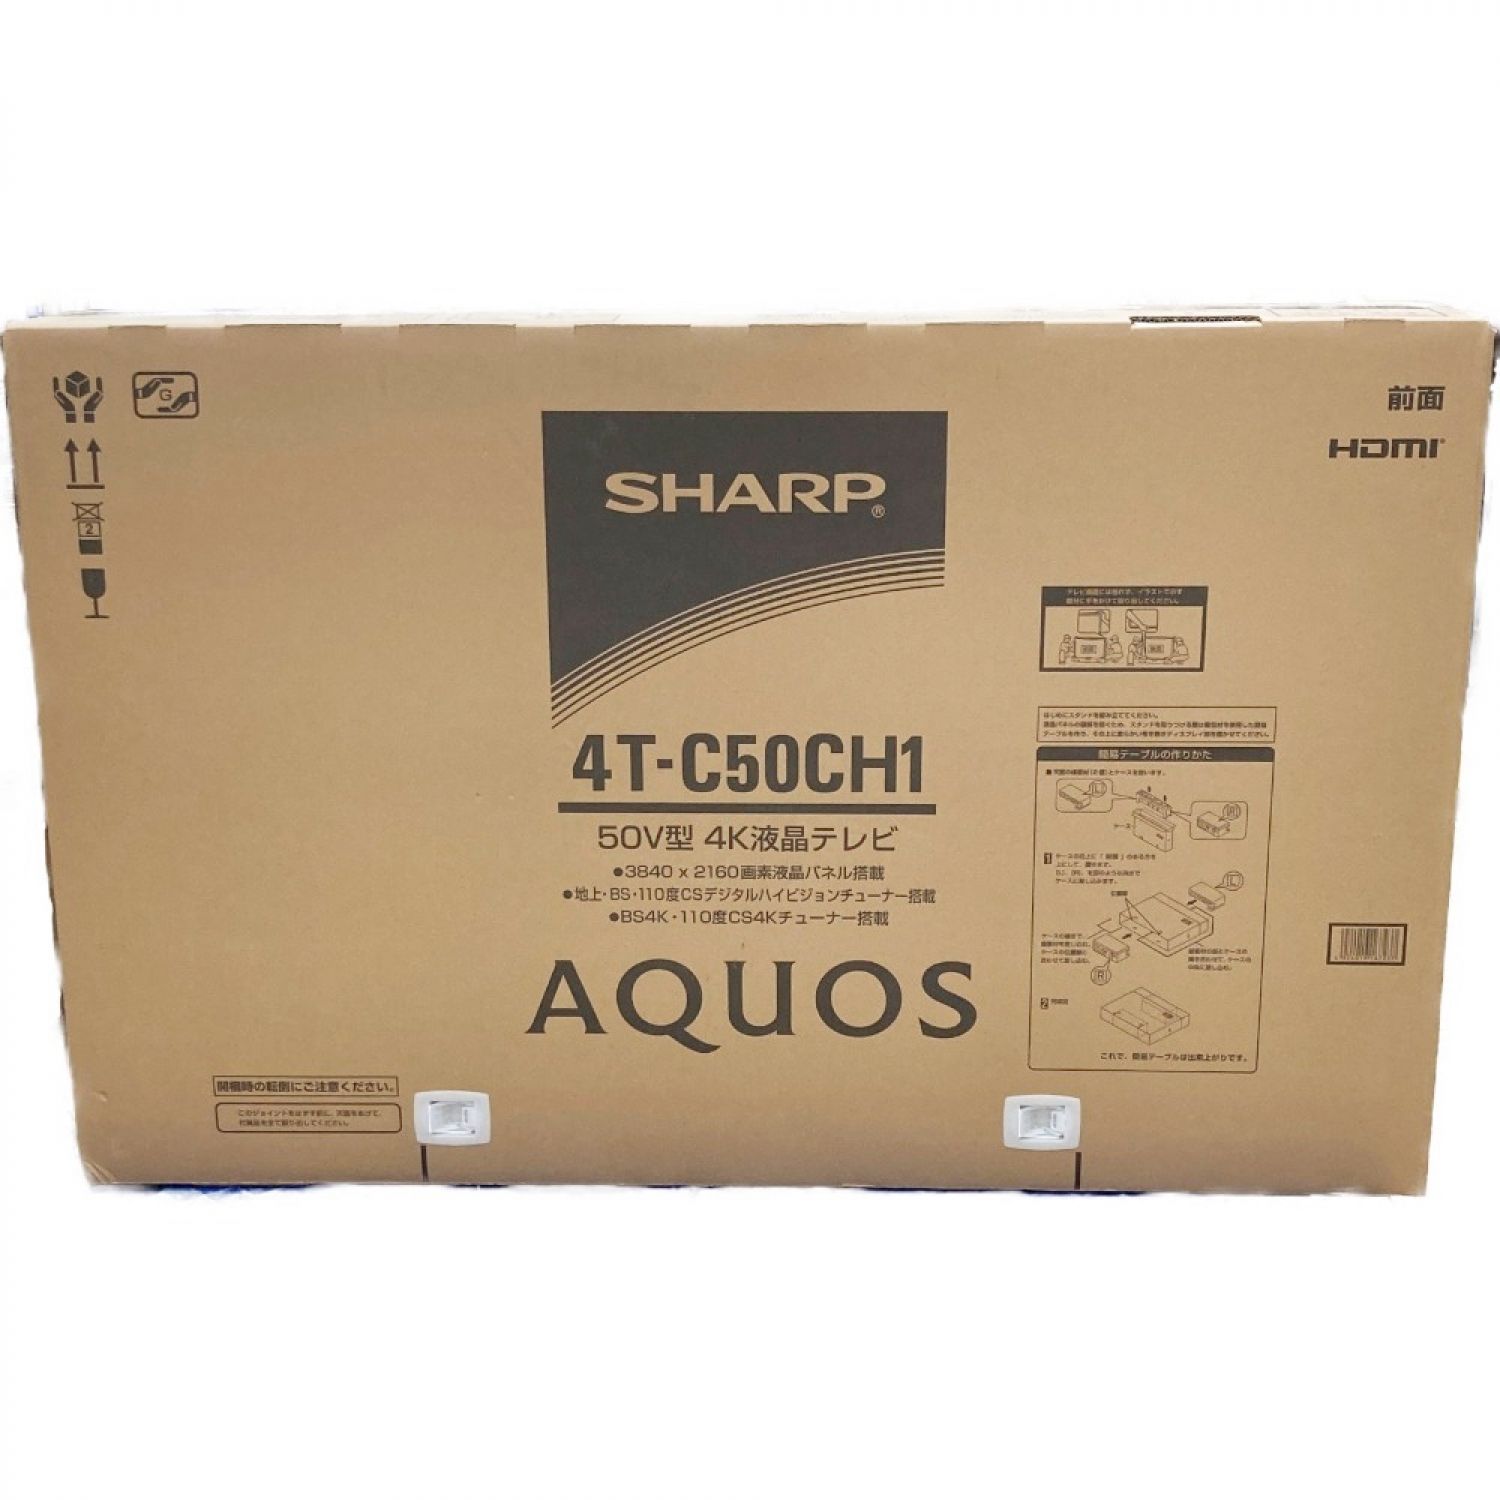 SHARP シャープ アクオス AQUOS 4K CH1 液晶テレビ 50型 4T-C50CH1 未使用品 Sランク